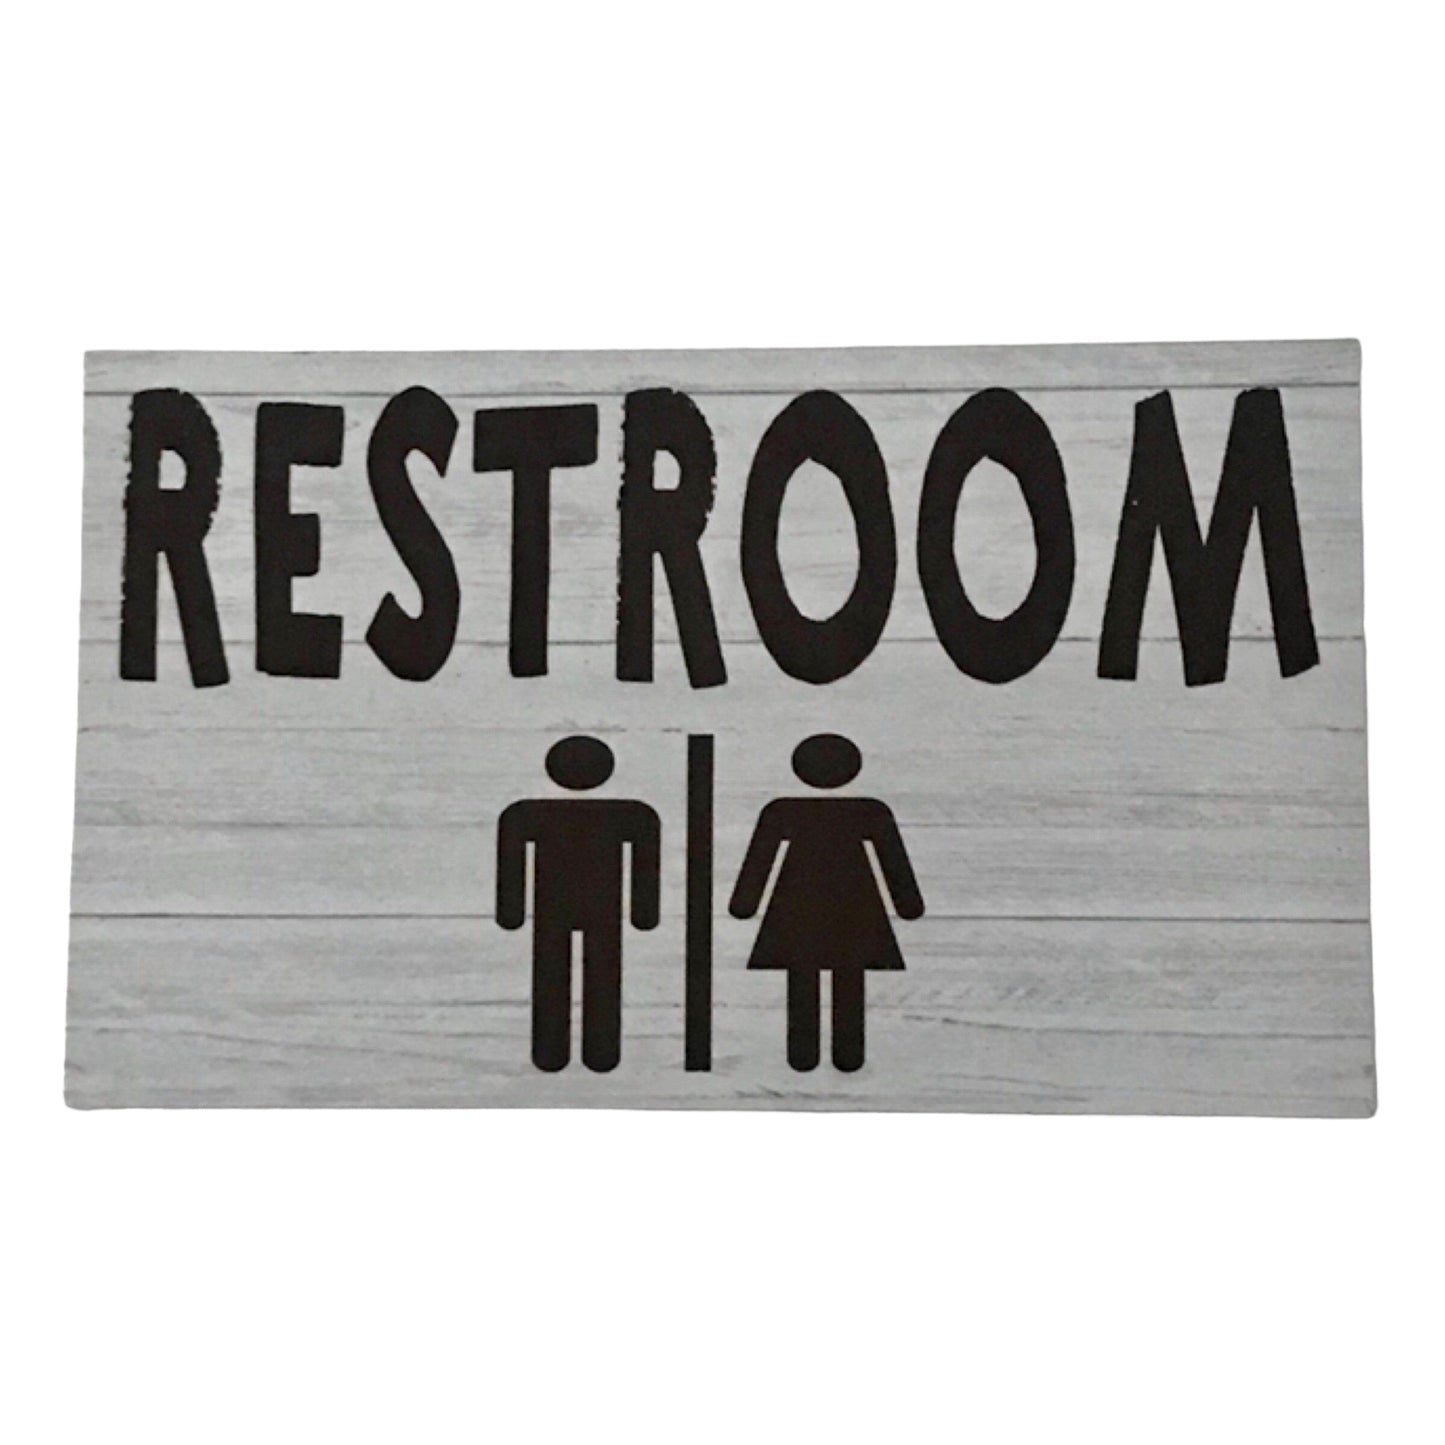 Restroom Toilet Door Timber Look Sign